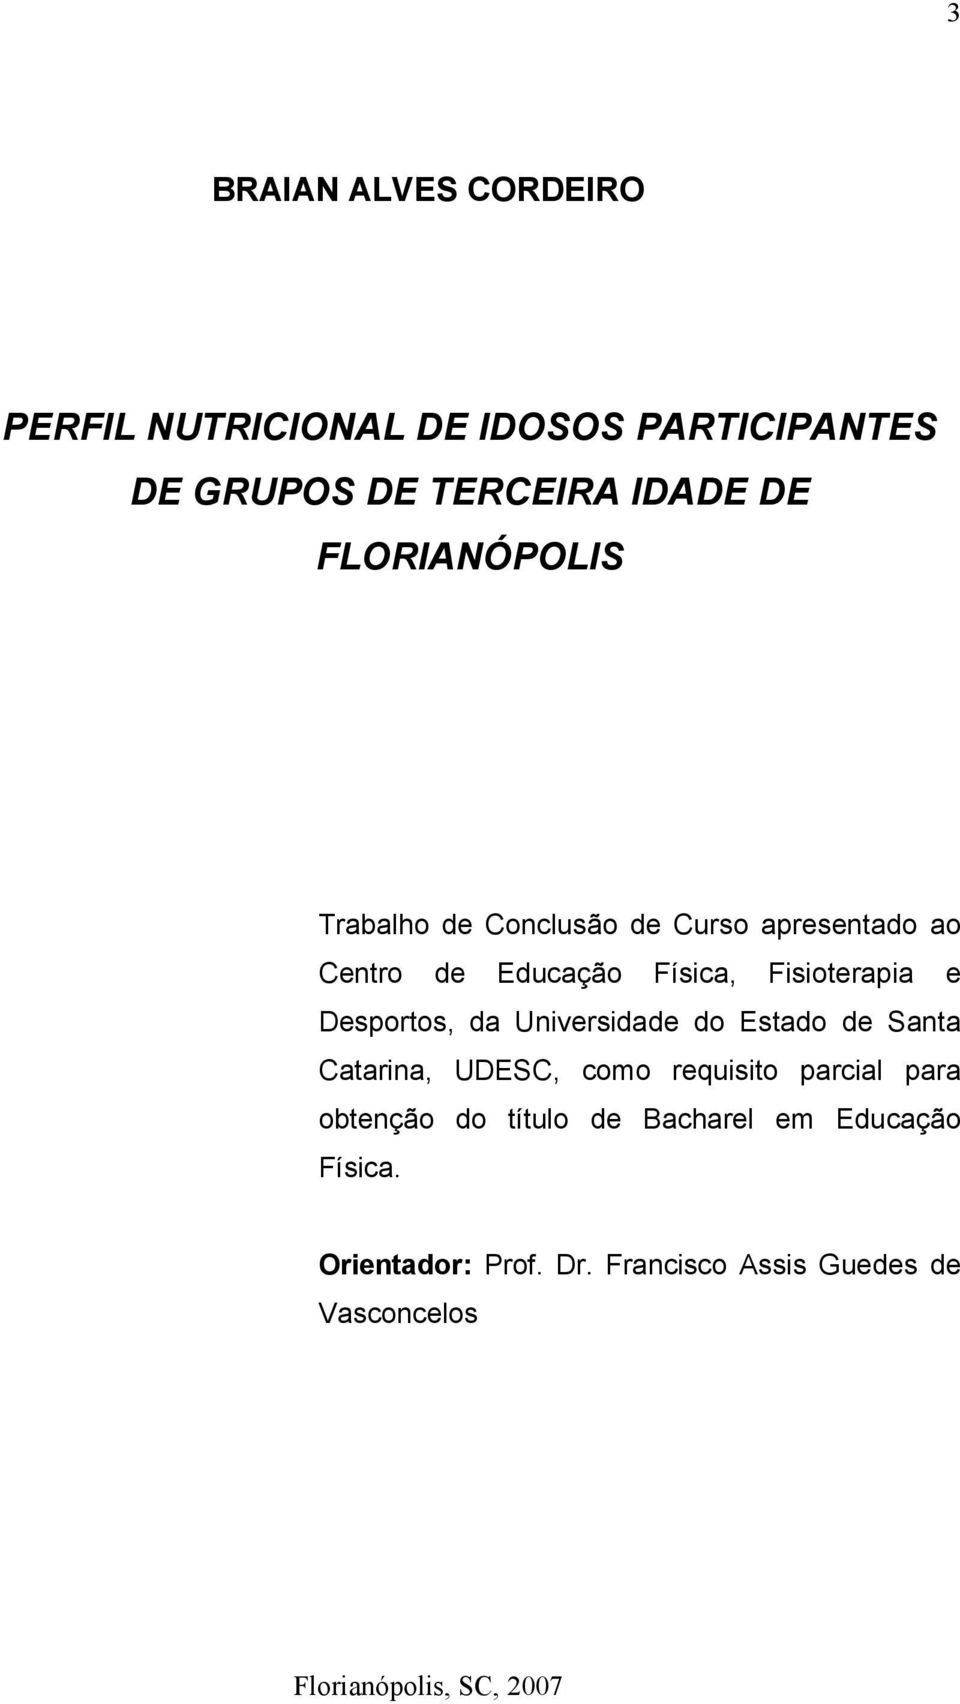 Desportos, da Universidade do Estado de Santa Catarina, UDESC, como requisito parcial para obtenção do